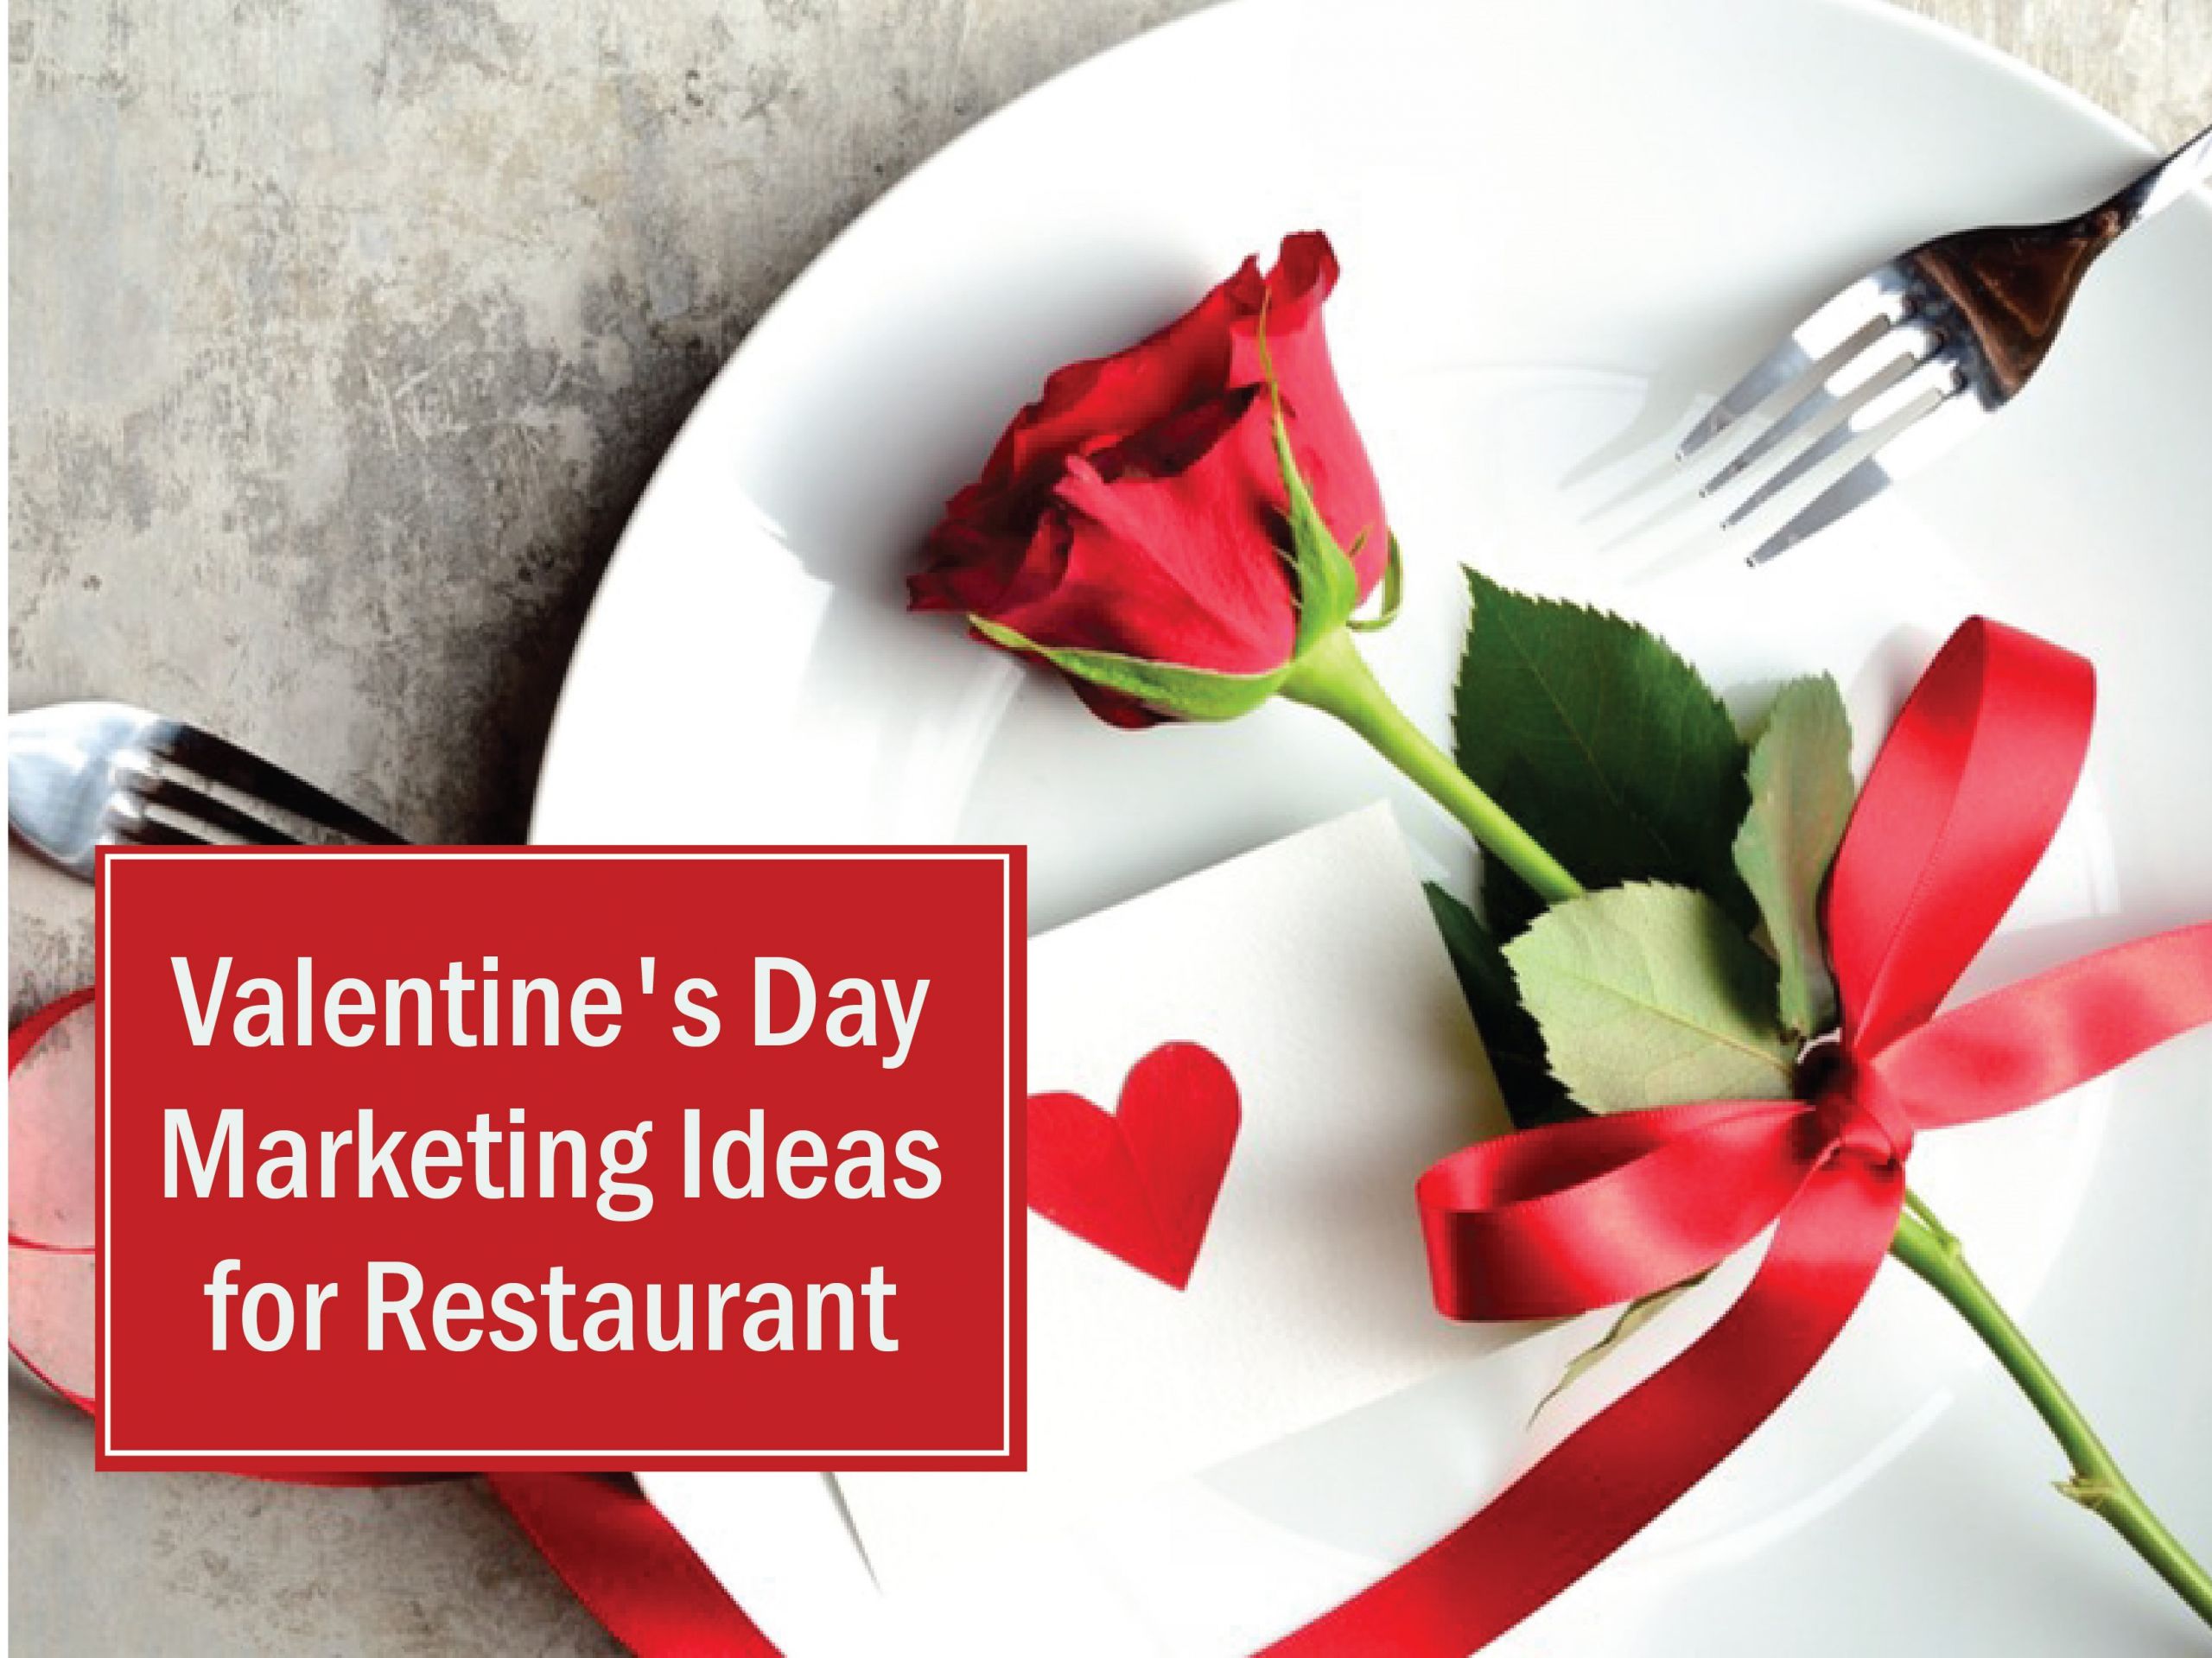 Valentines Day Restaurant Ideas
 7 Unique Valentines Day Marketing Ideas for Restaurants